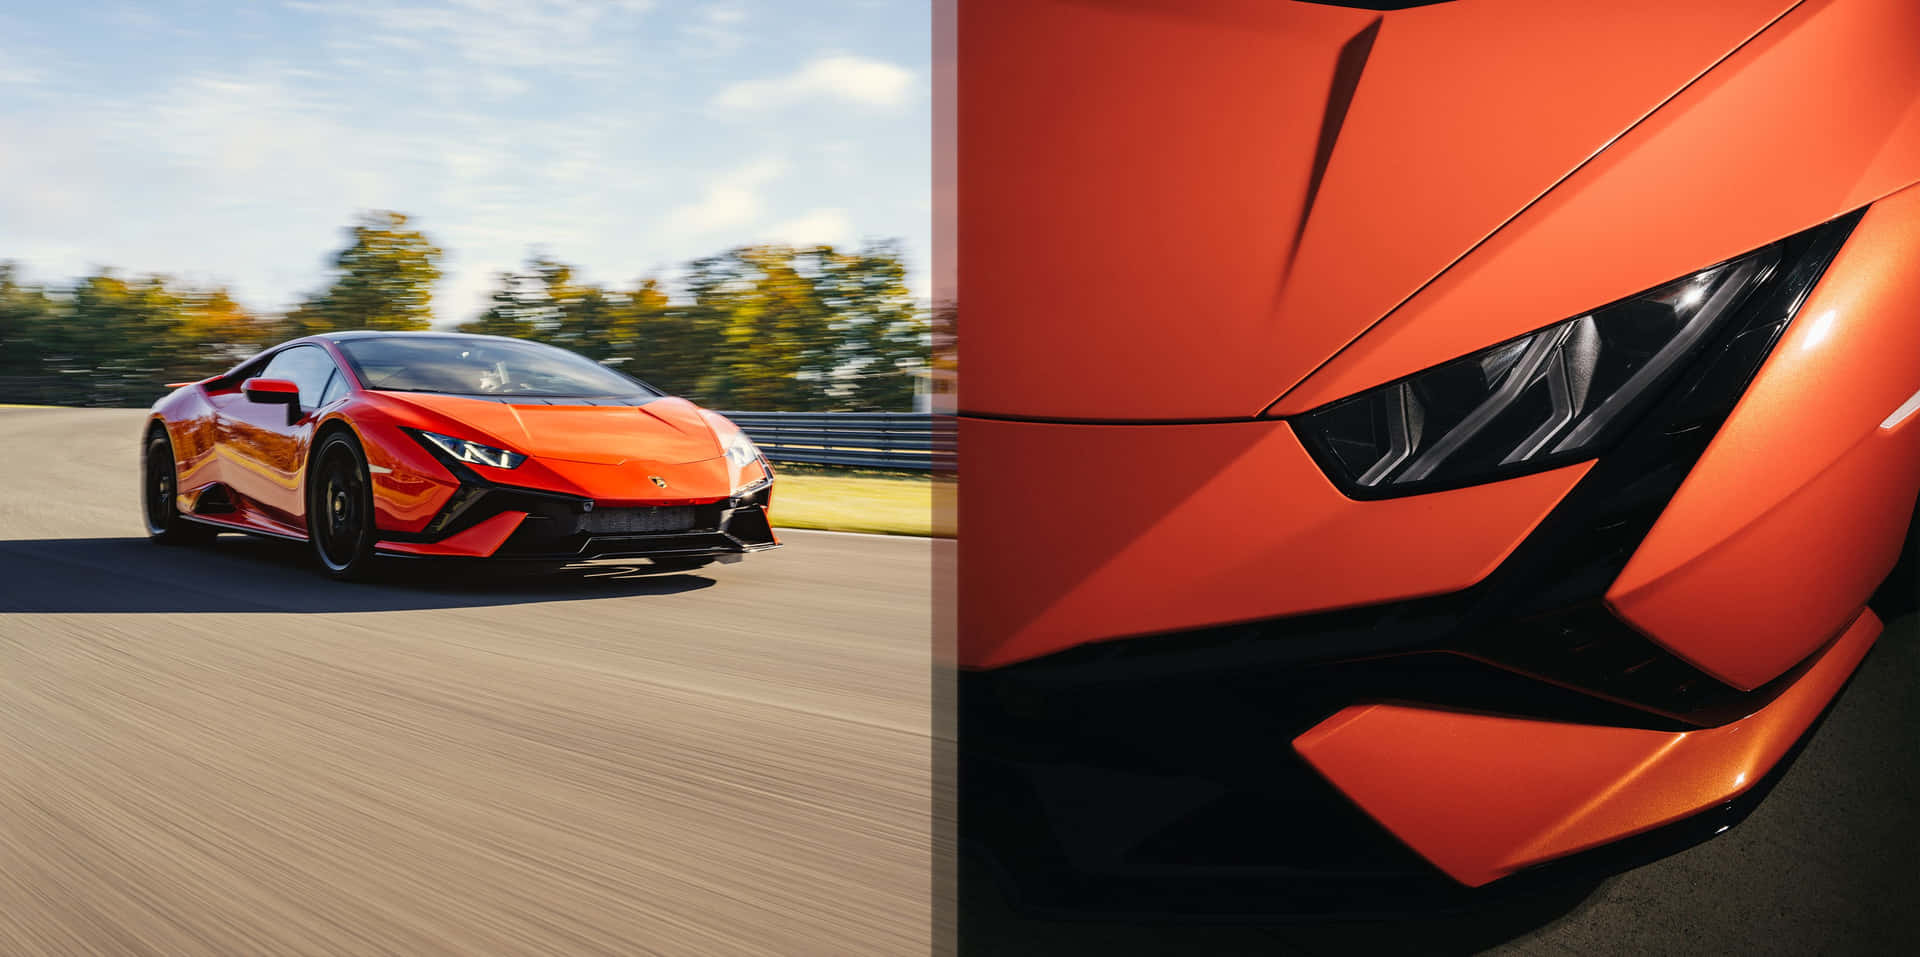 Einlamborghini Huracan Und Ein Lamborghini Huracan